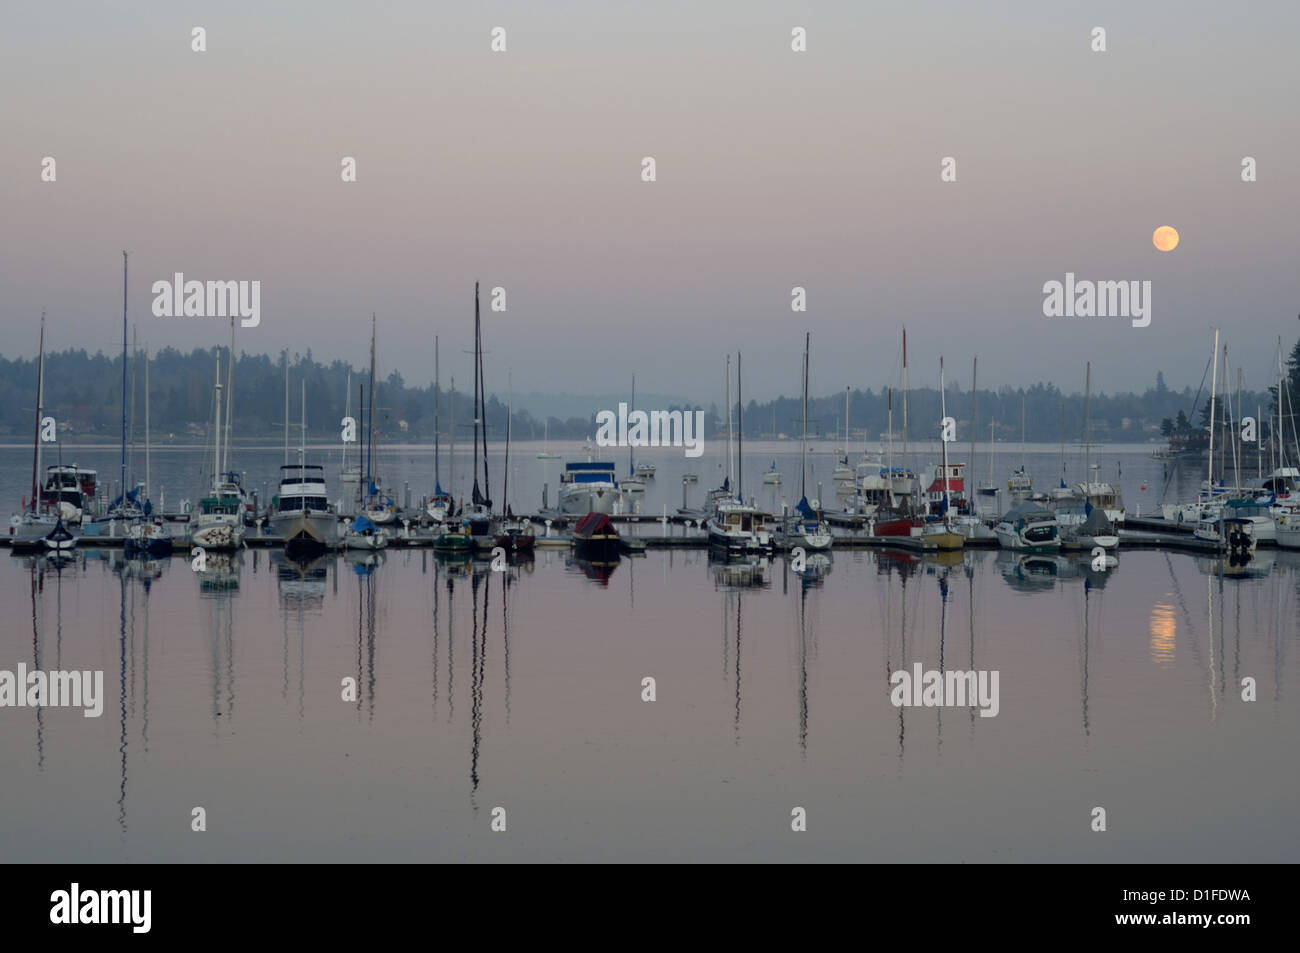 Bateaux réfléchir sur les eaux de Puget Sound au quartier-maître Burton Marina, Vashon Island, Washington State, USA Banque D'Images